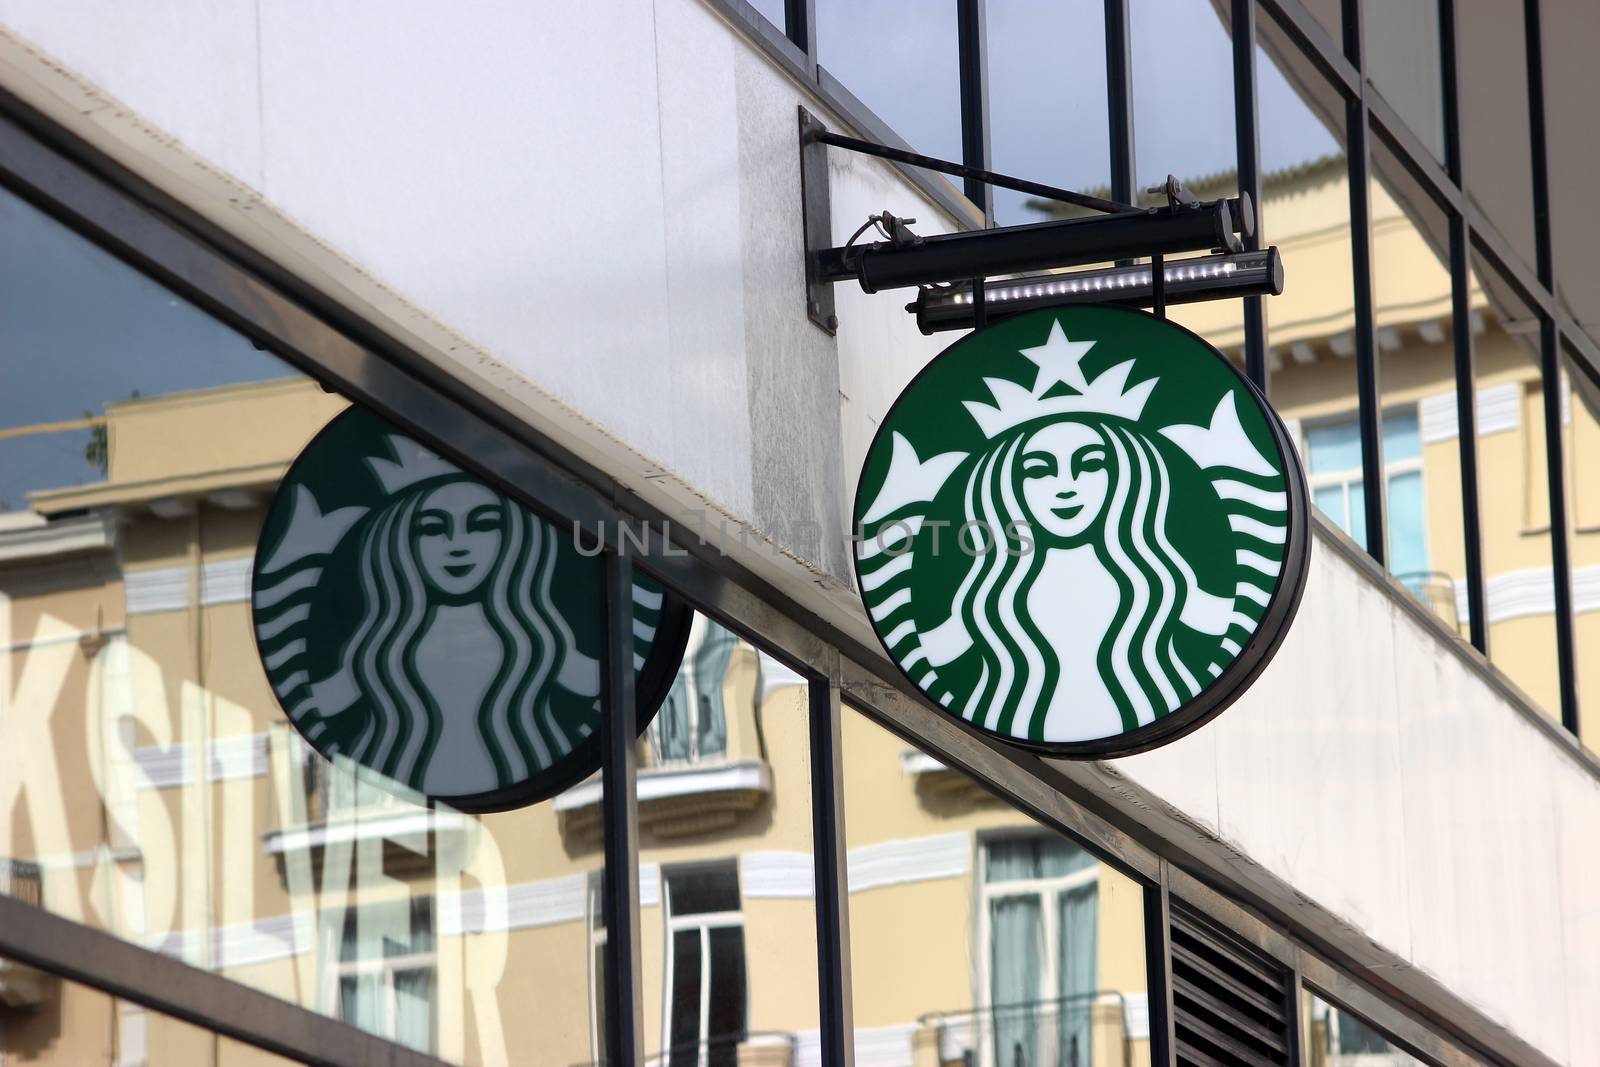 Starbucks Sign in Monaco, La Condamine by bensib